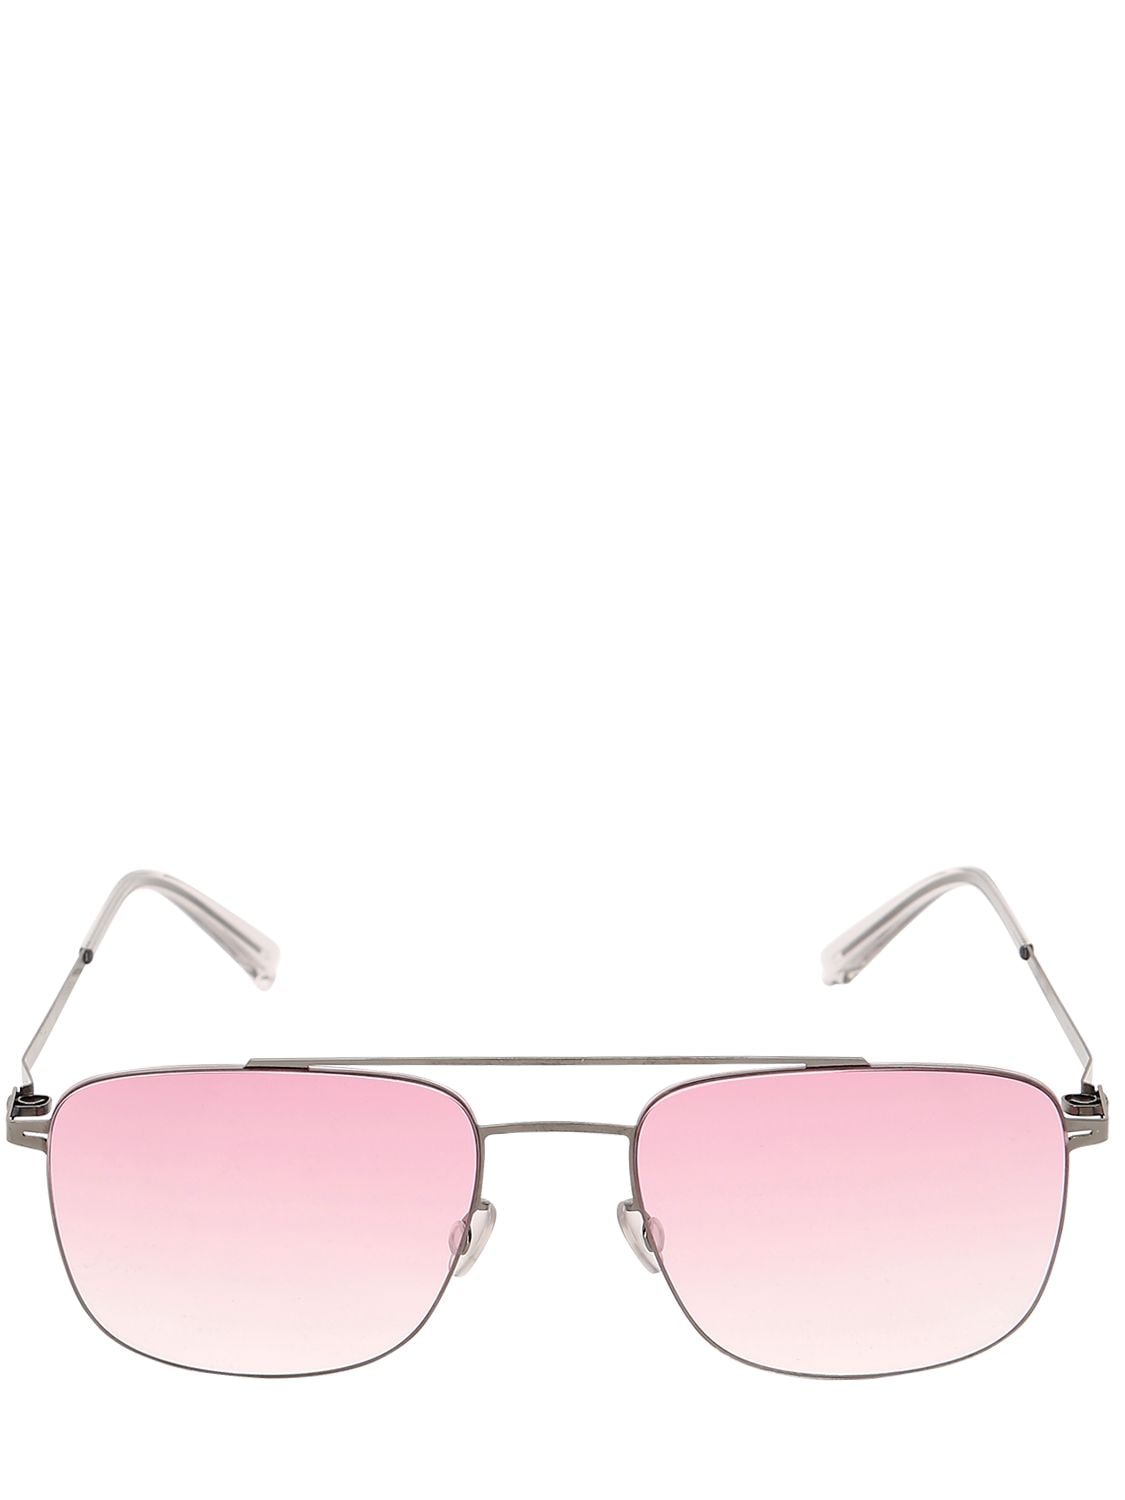 Mykita Yuuto Aviator Sunglasses In Light Pink